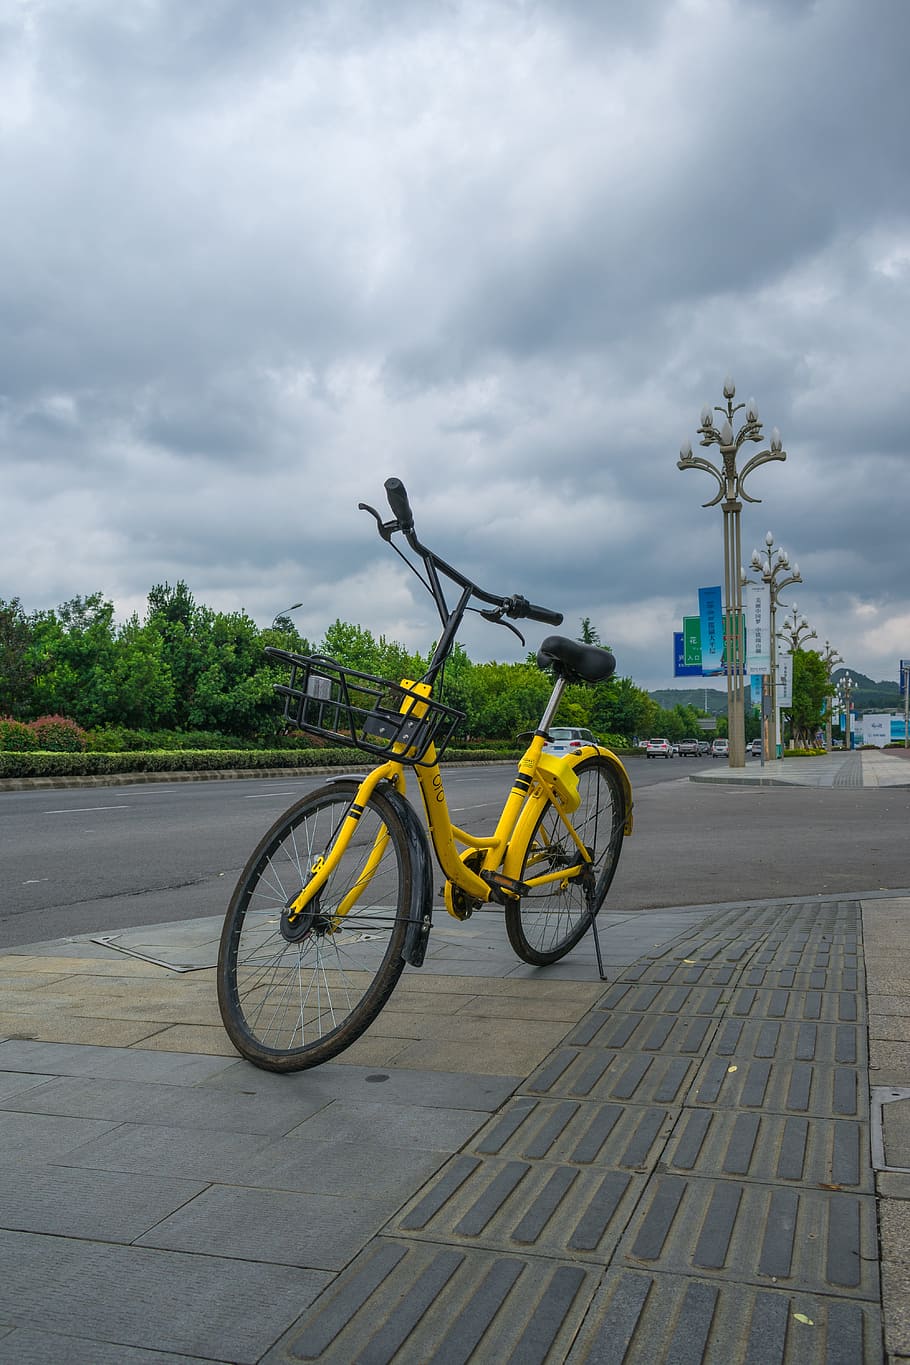 ofo, 작은 노란 차, 공유 자전거, 자전거, ofo 공유 자전거, 공유 경제, 거리, 구름-하늘, 교통, 운송 수단